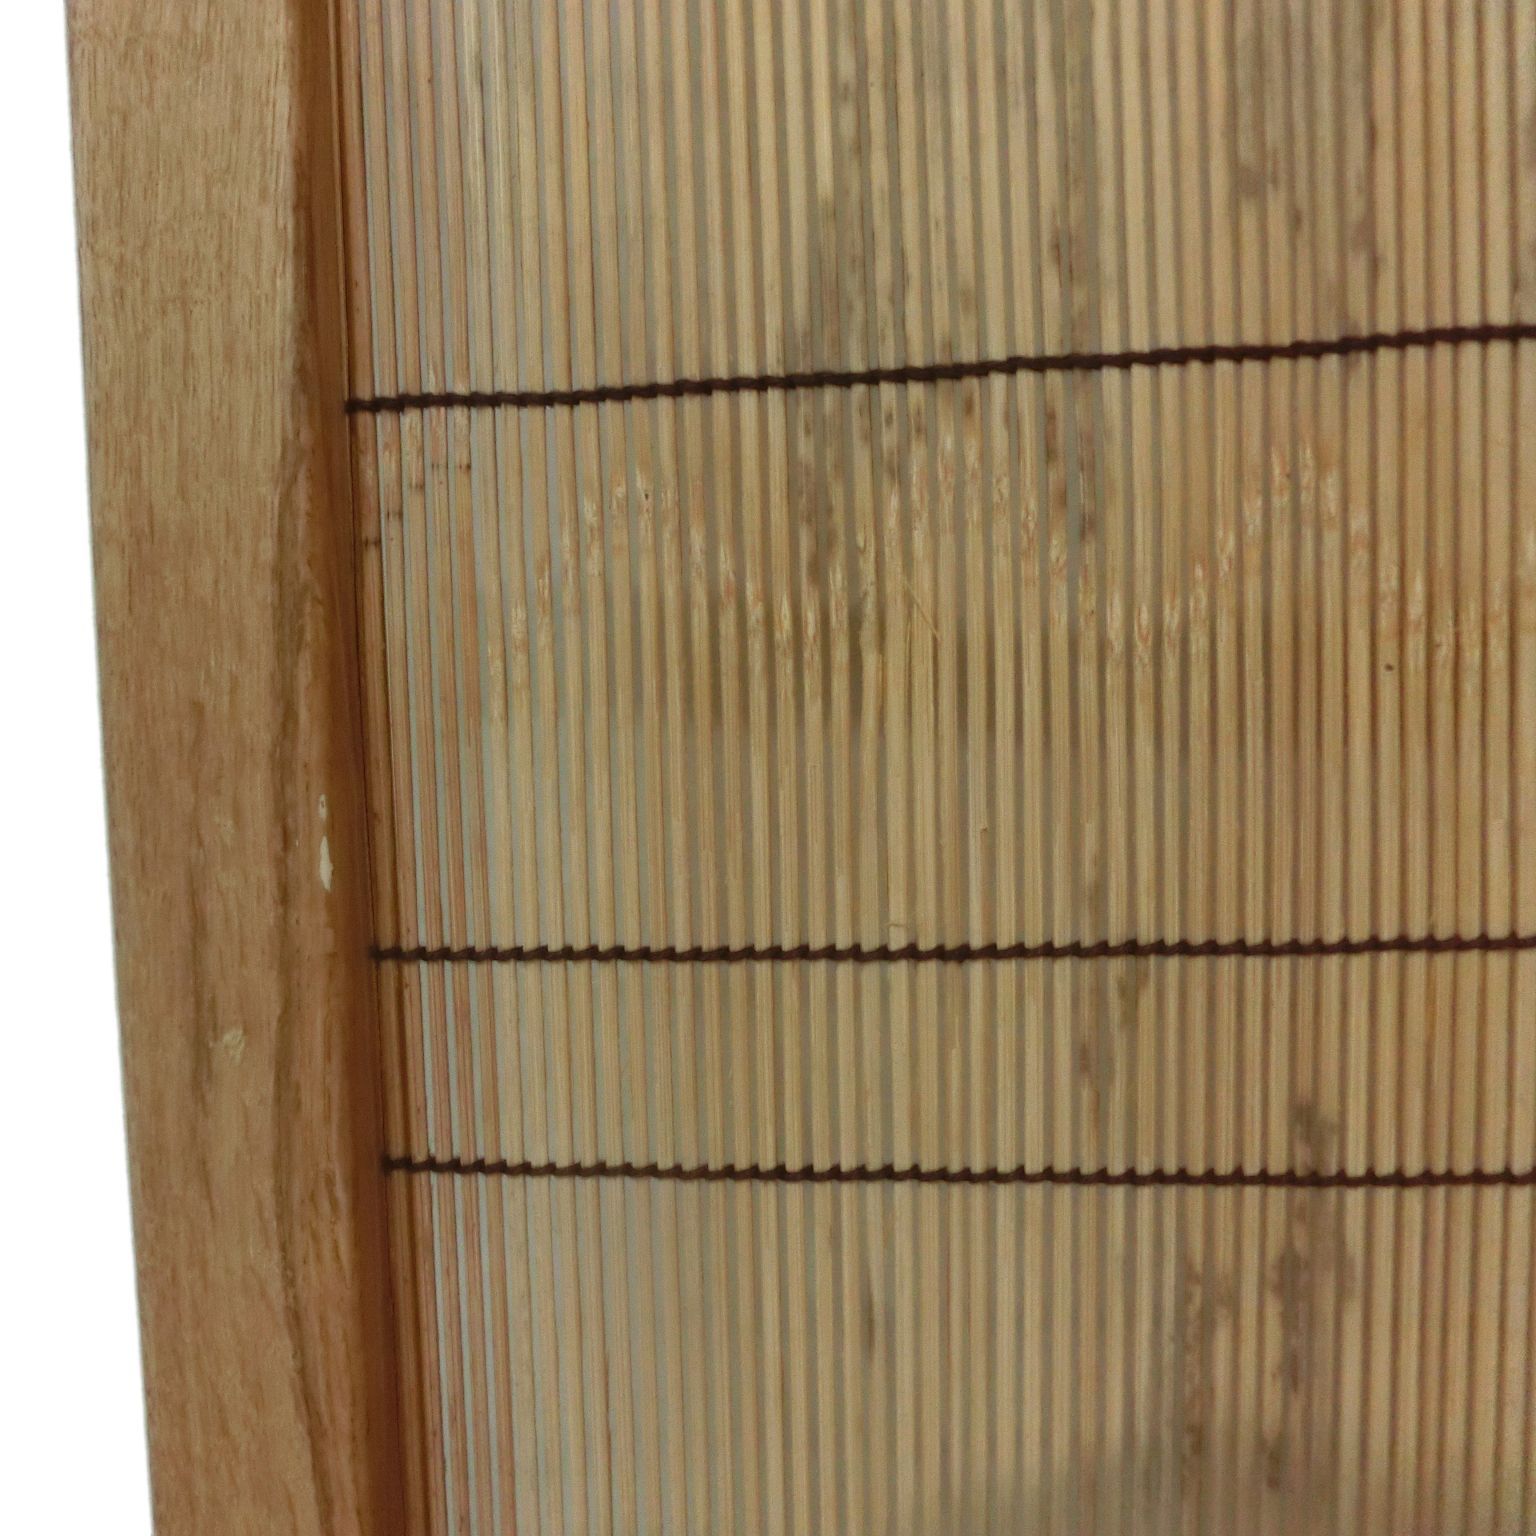 結界 衝立 パーテーション ついたて 天然杢メープル無垢材 銘竹 紋竹 